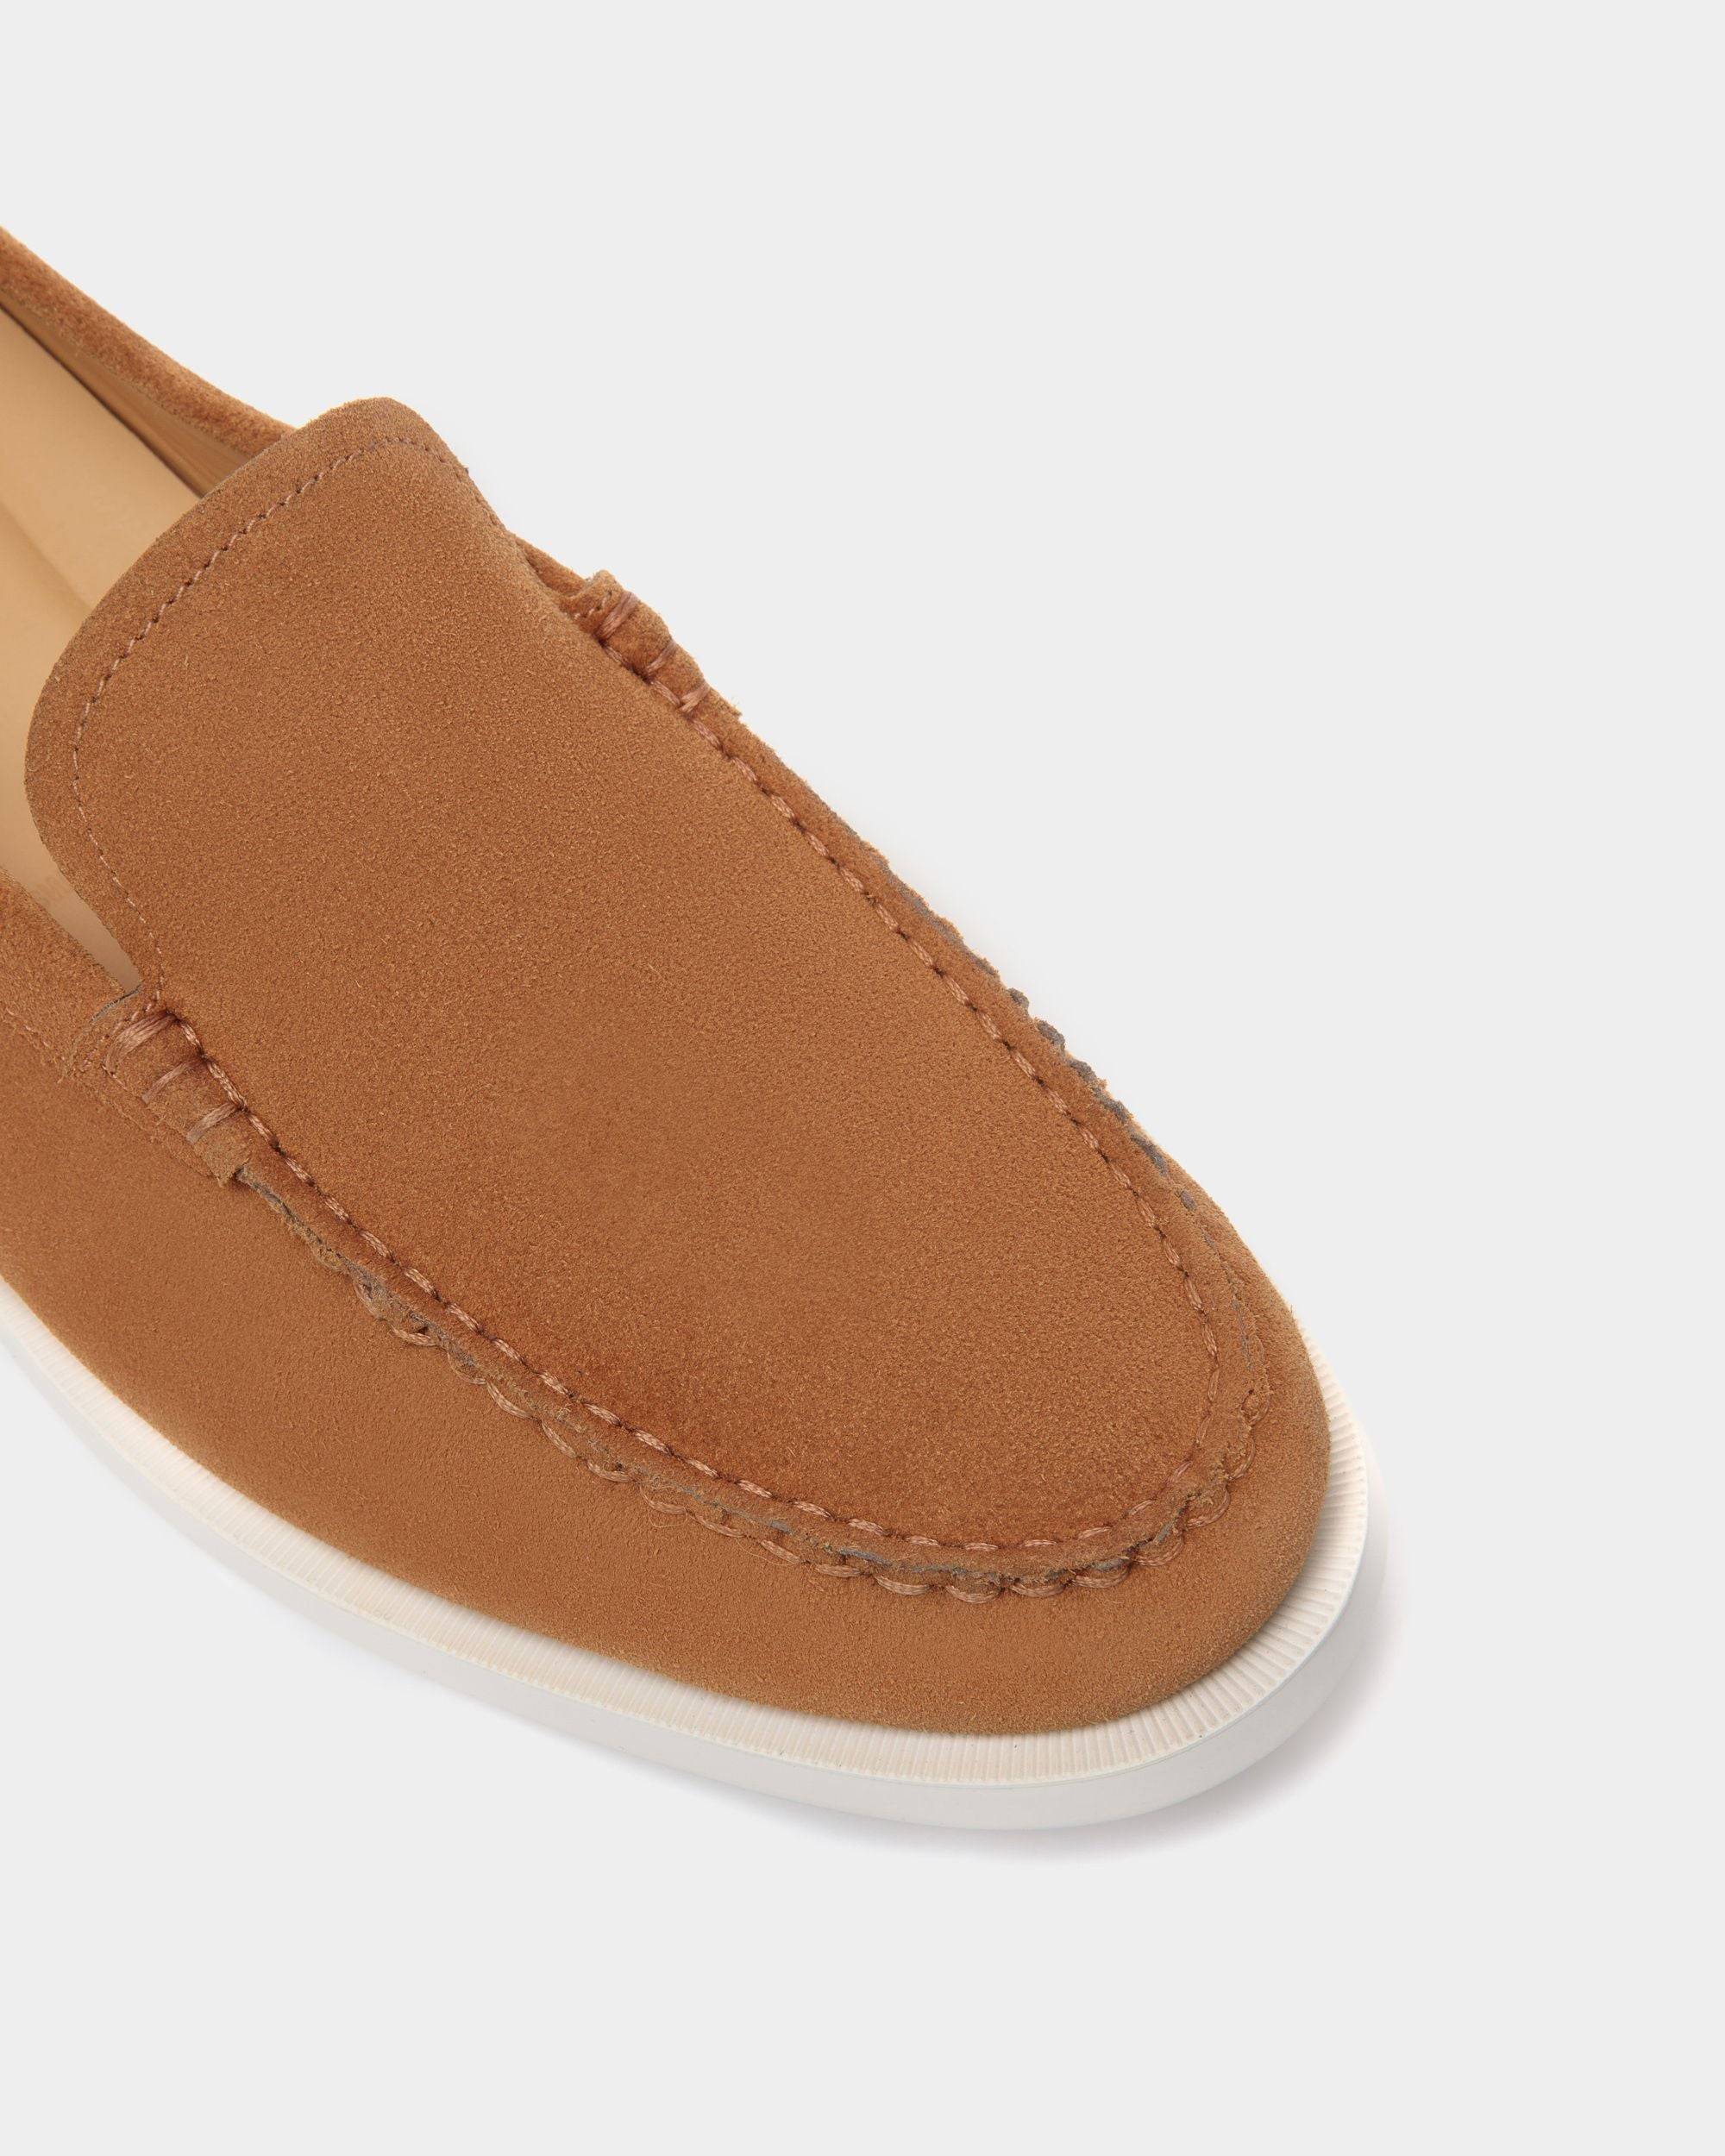 Nelson | Loafers für Herren aus Veloursleder in Braun | Bally | Still Life Detail